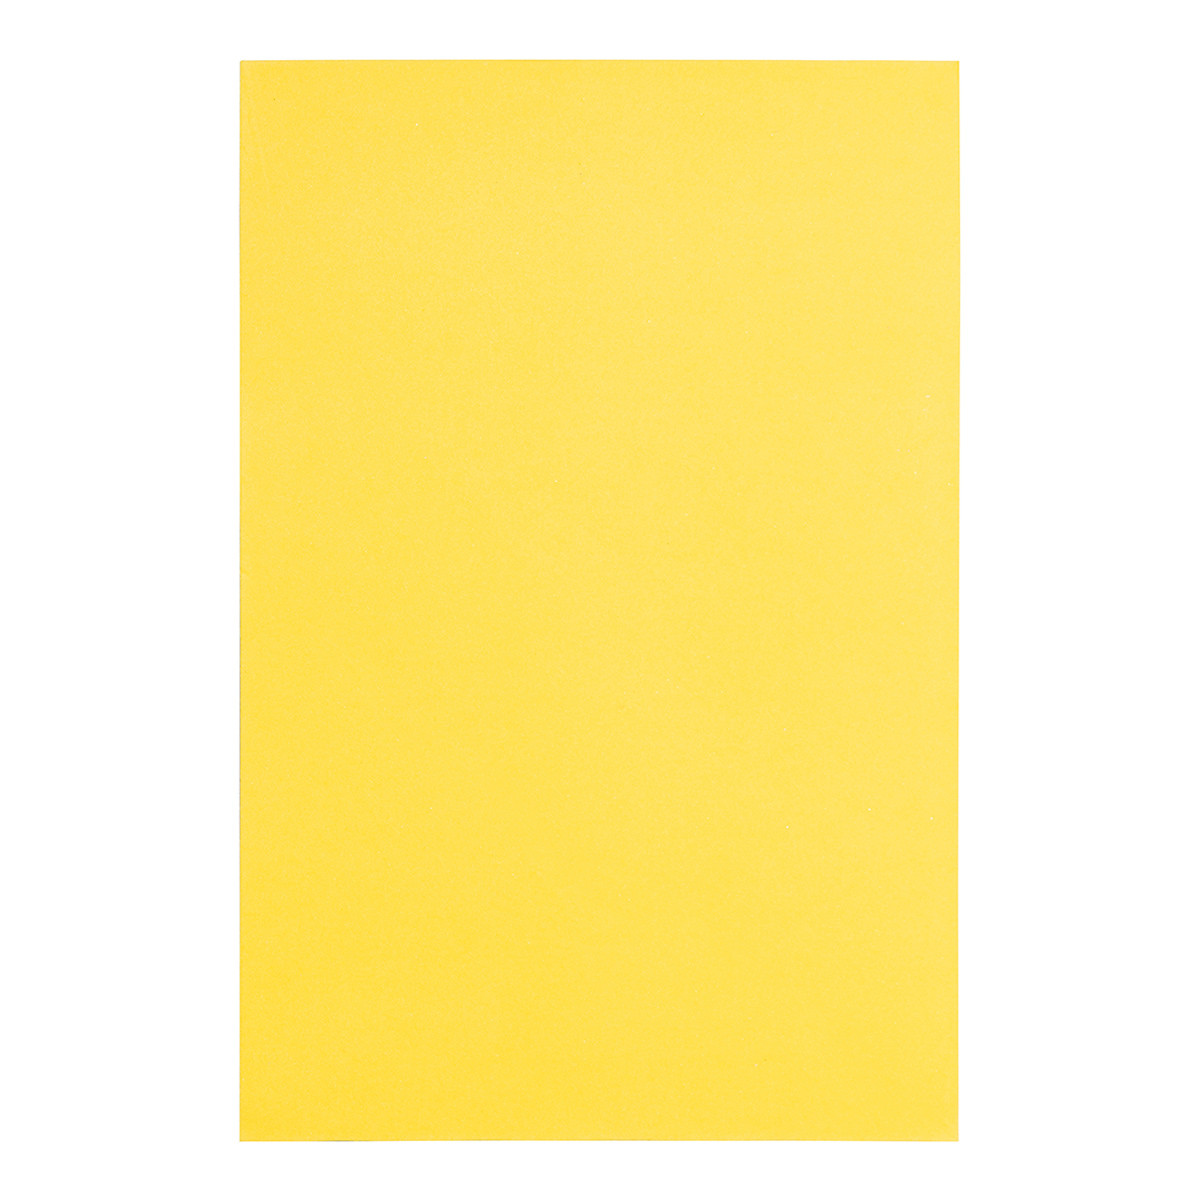 Фоамиран ЕВА жовтий, з клейовим шаром, 200*300 мм, товщина 1,7 мм, 10 листів